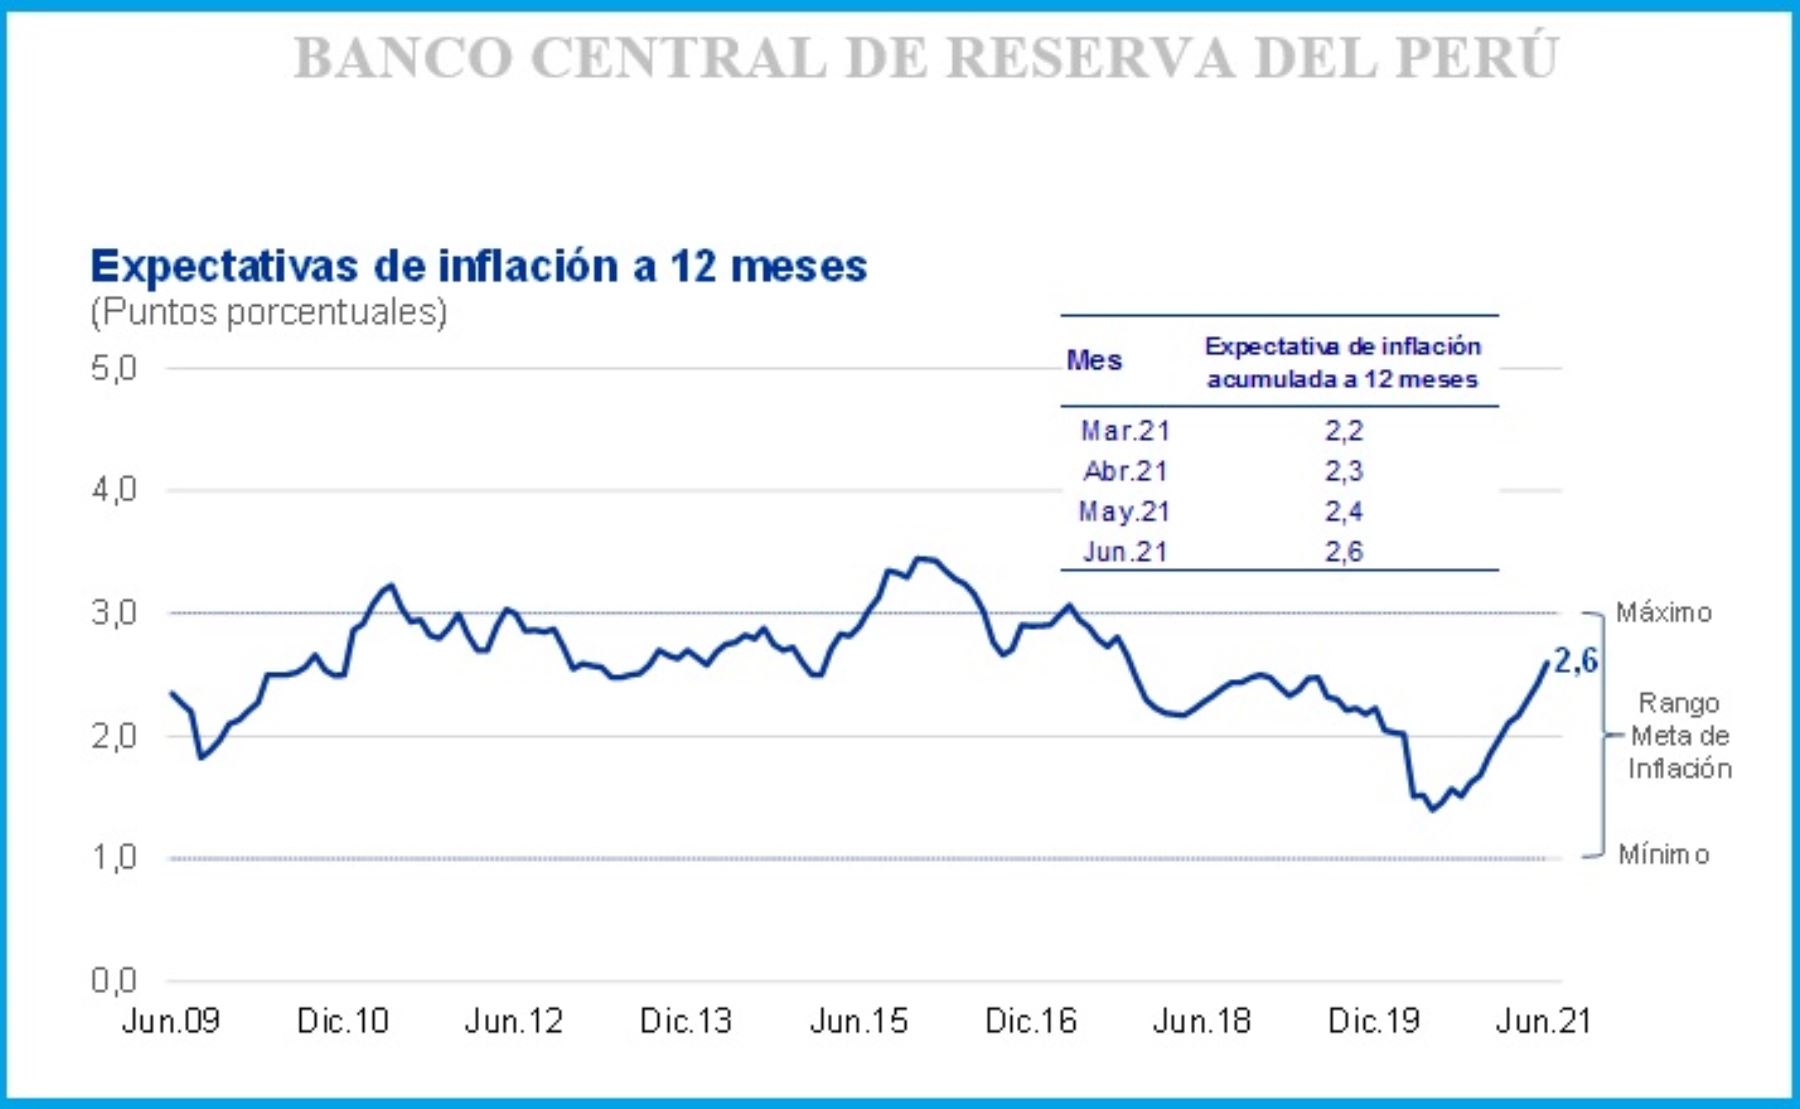 BCR la expectativa de inflación a 12 meses se ubica en 2.6 Realidad